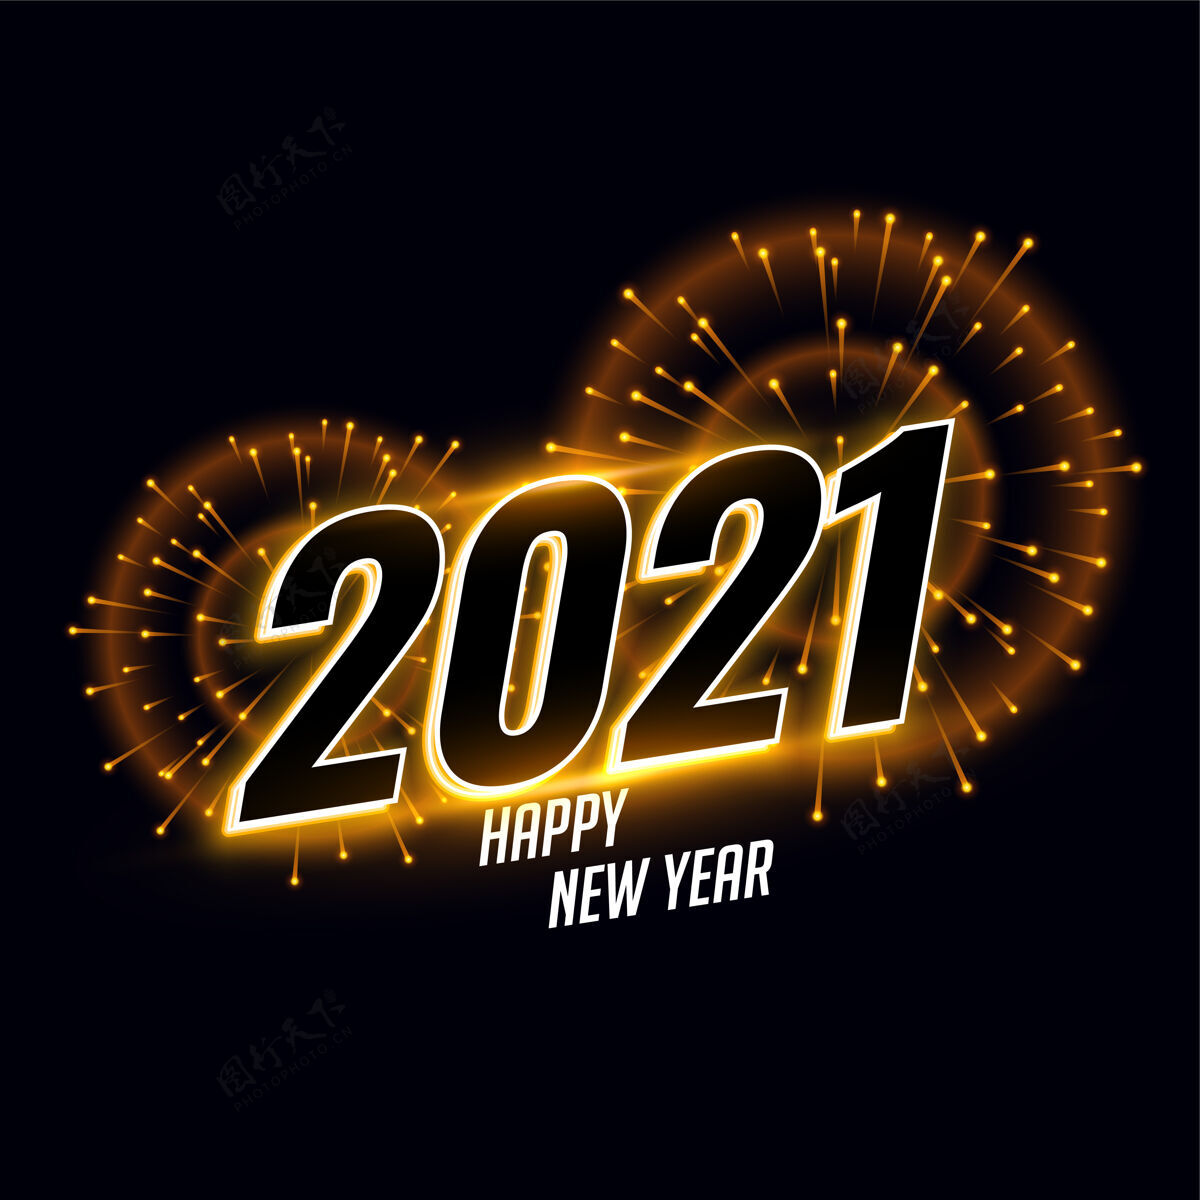 日期2021年庆祝新年卡与烟花问候新年冬季